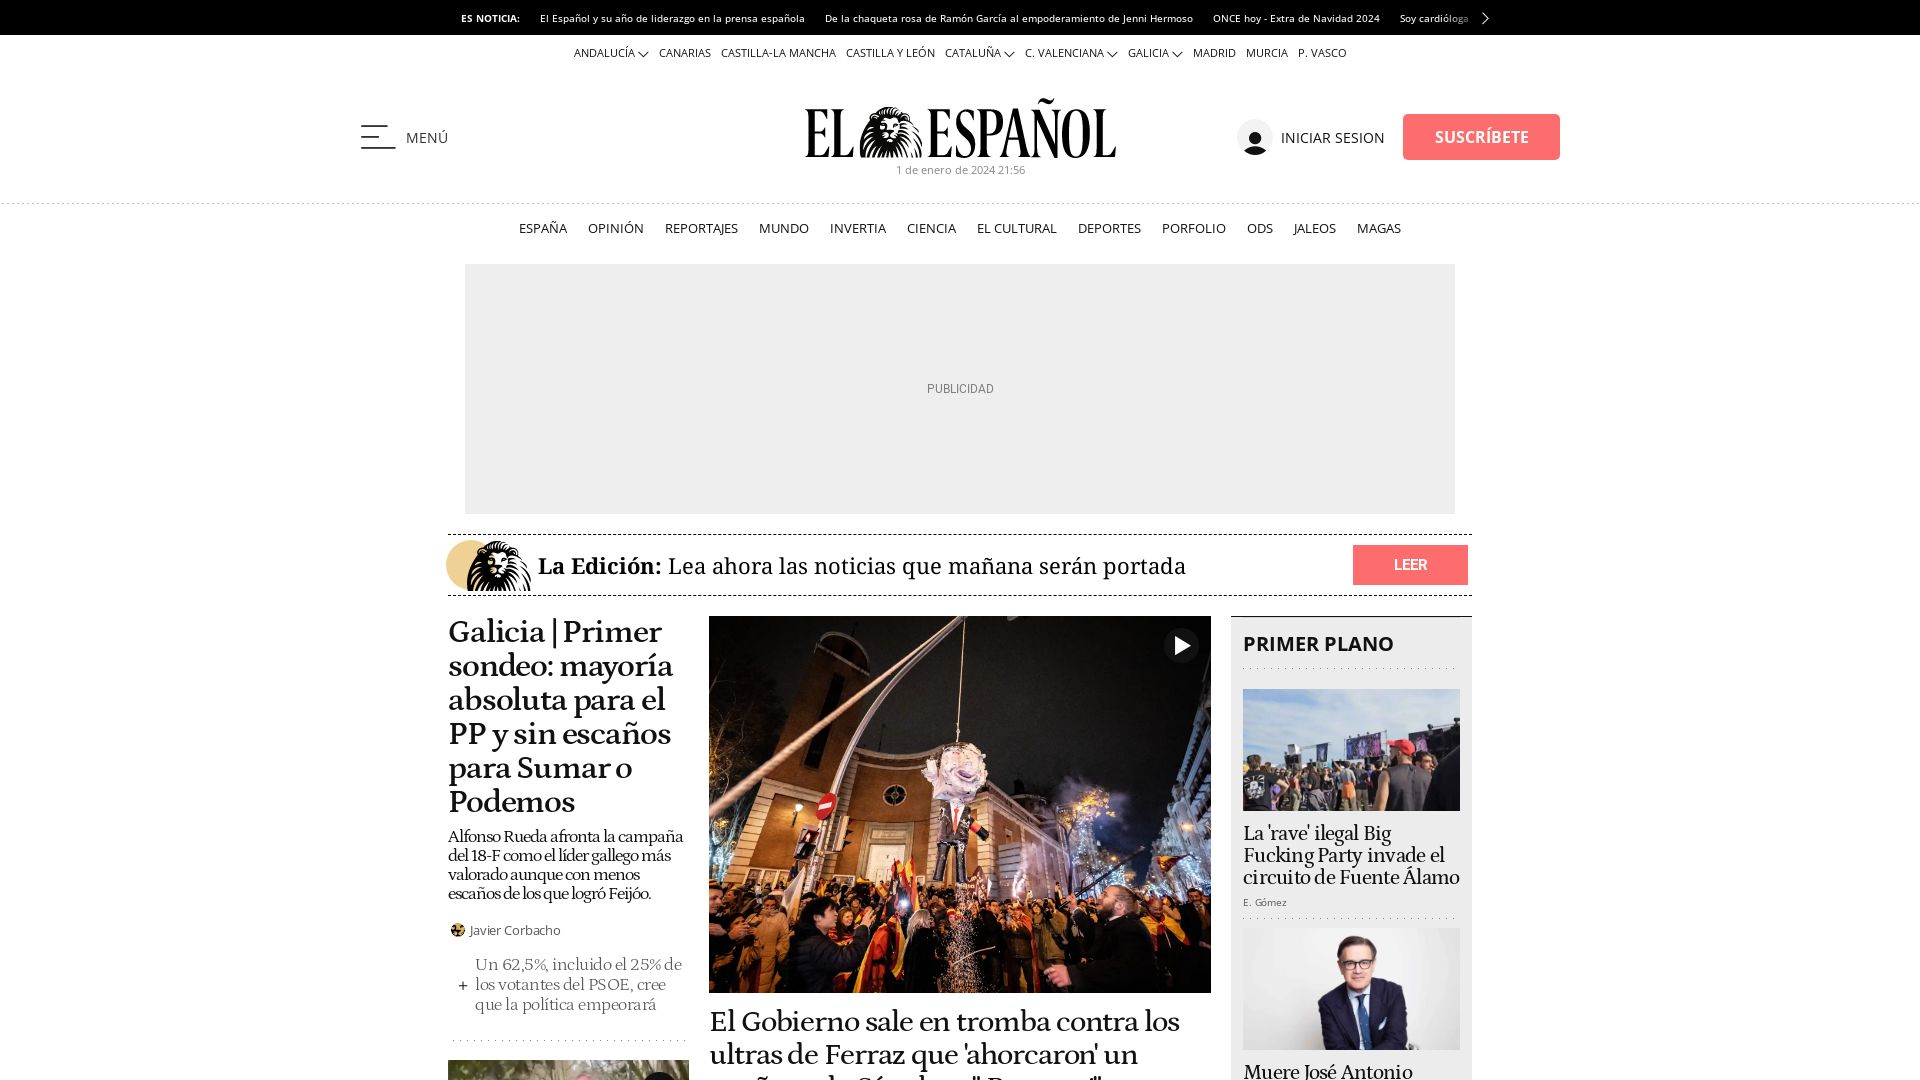 Stato del sito web elespanol.com è   ONLINE